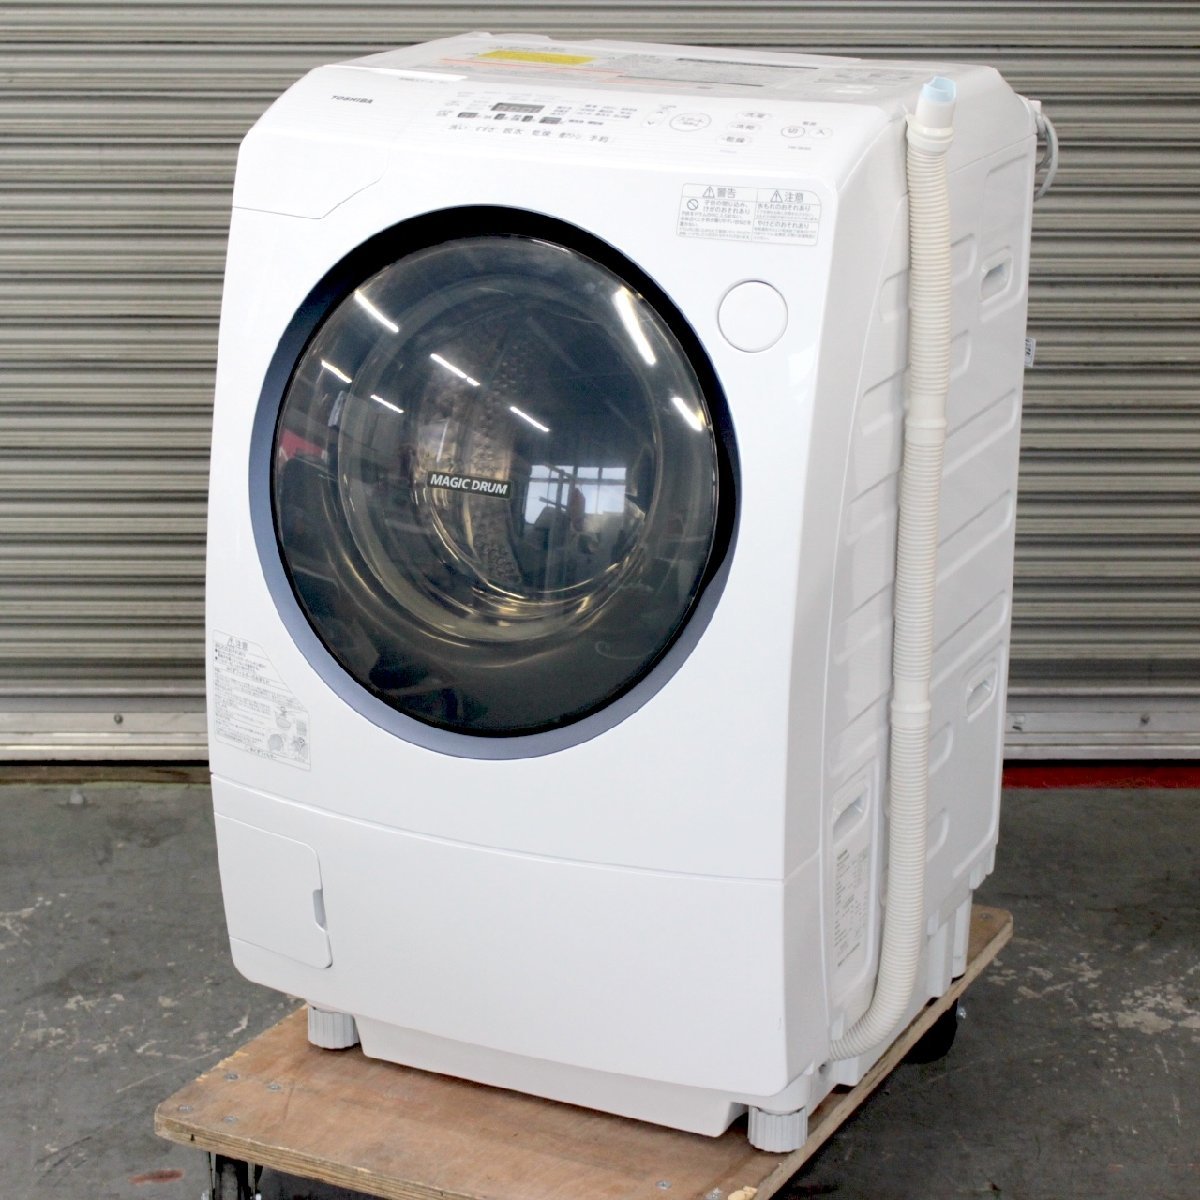 東京都武蔵野市にて 東芝 ドラム式洗濯機 TW-96A5L 2017年製 を出張買取させて頂きました。